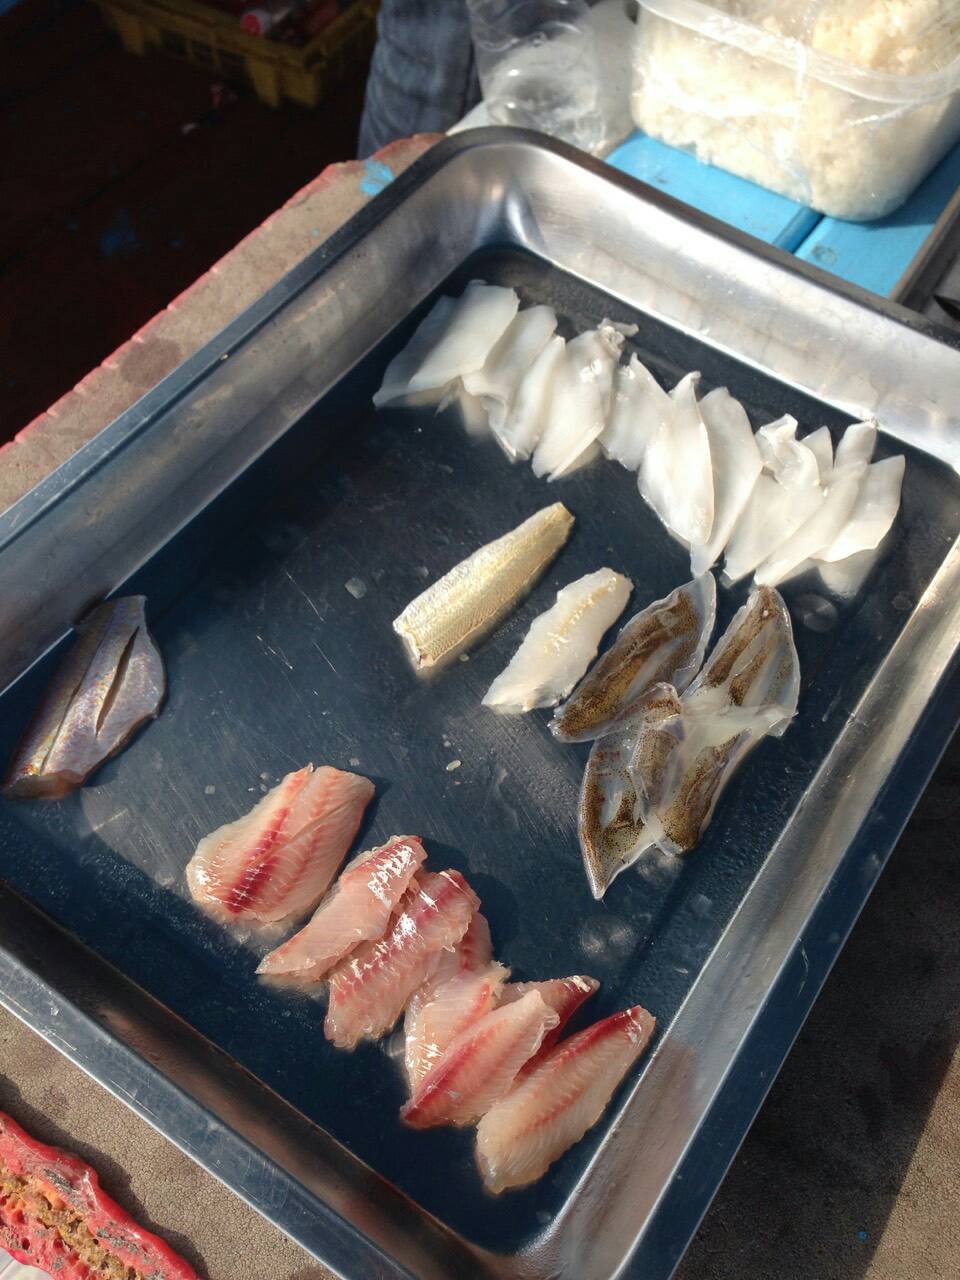 วัคถุดิบหลักวันนี้(รังแกเด็ก)
-ปลาหมึกหอม
-ปลาทรายแดง
-ปลาครืดคราด
-ปลาเห็ดโคน